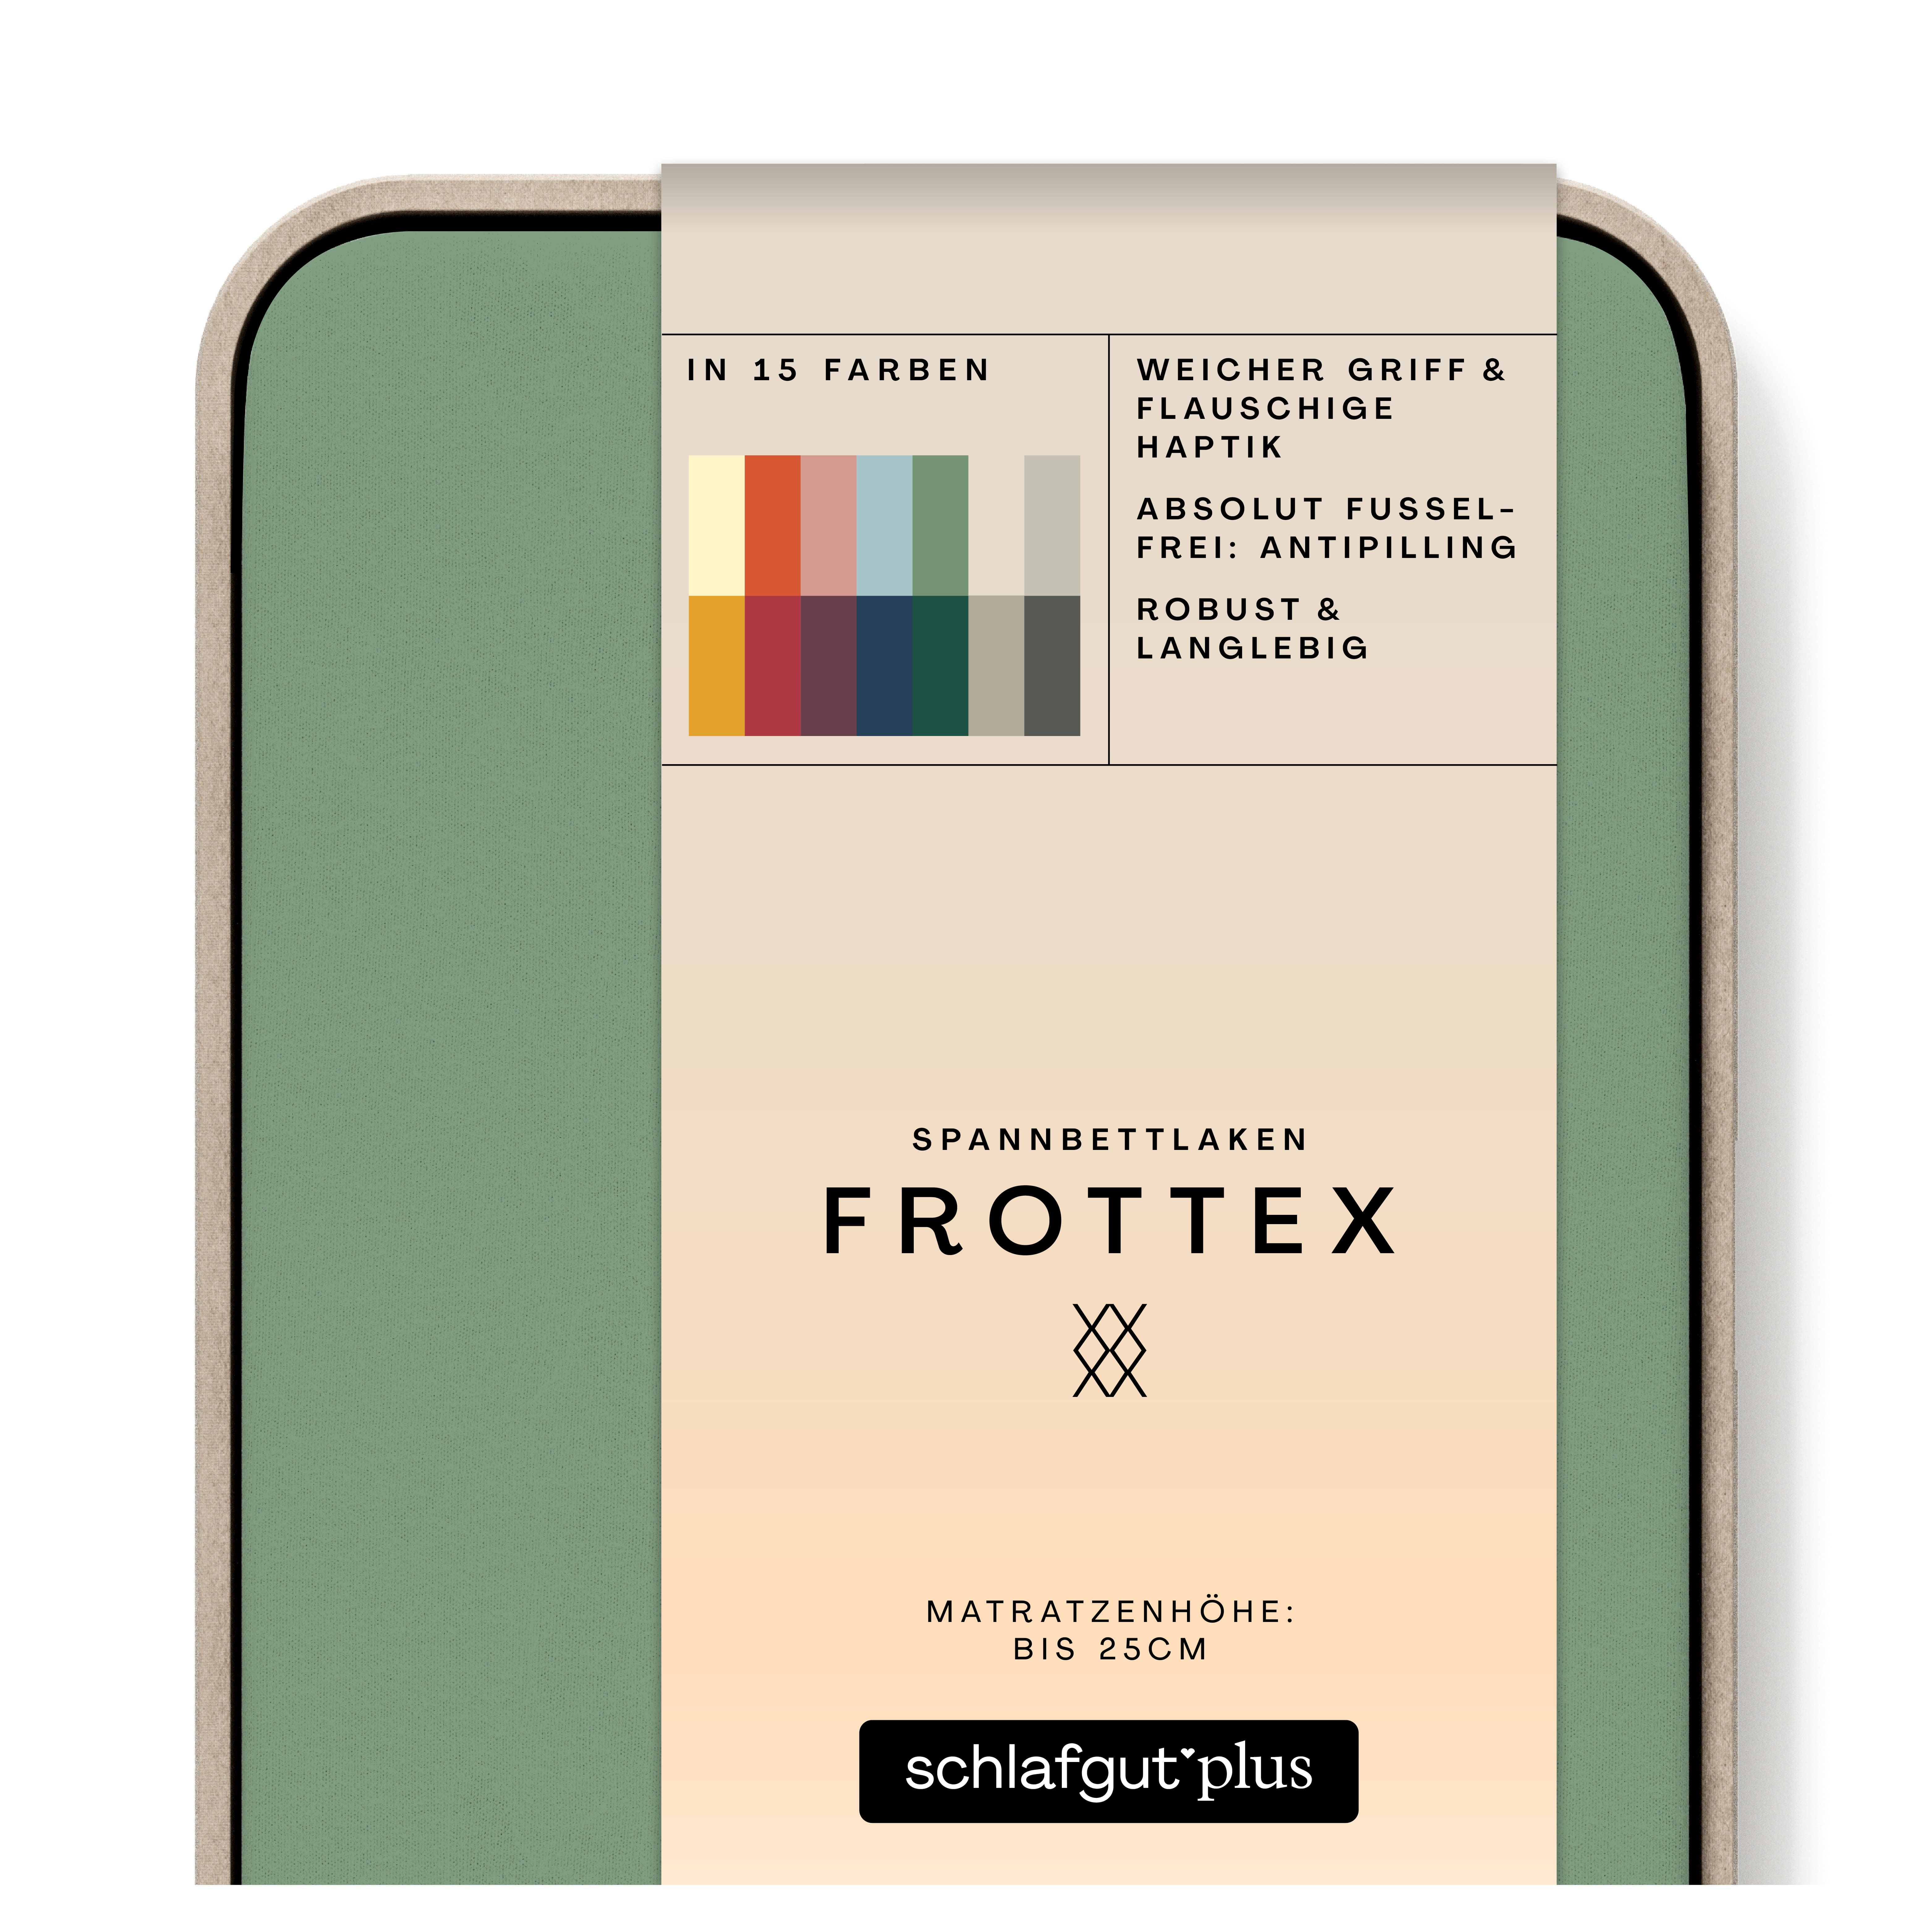 Das Produktbild vom Spannbettlaken der Reihe Frottex in Farbe green mid von Schlafgut